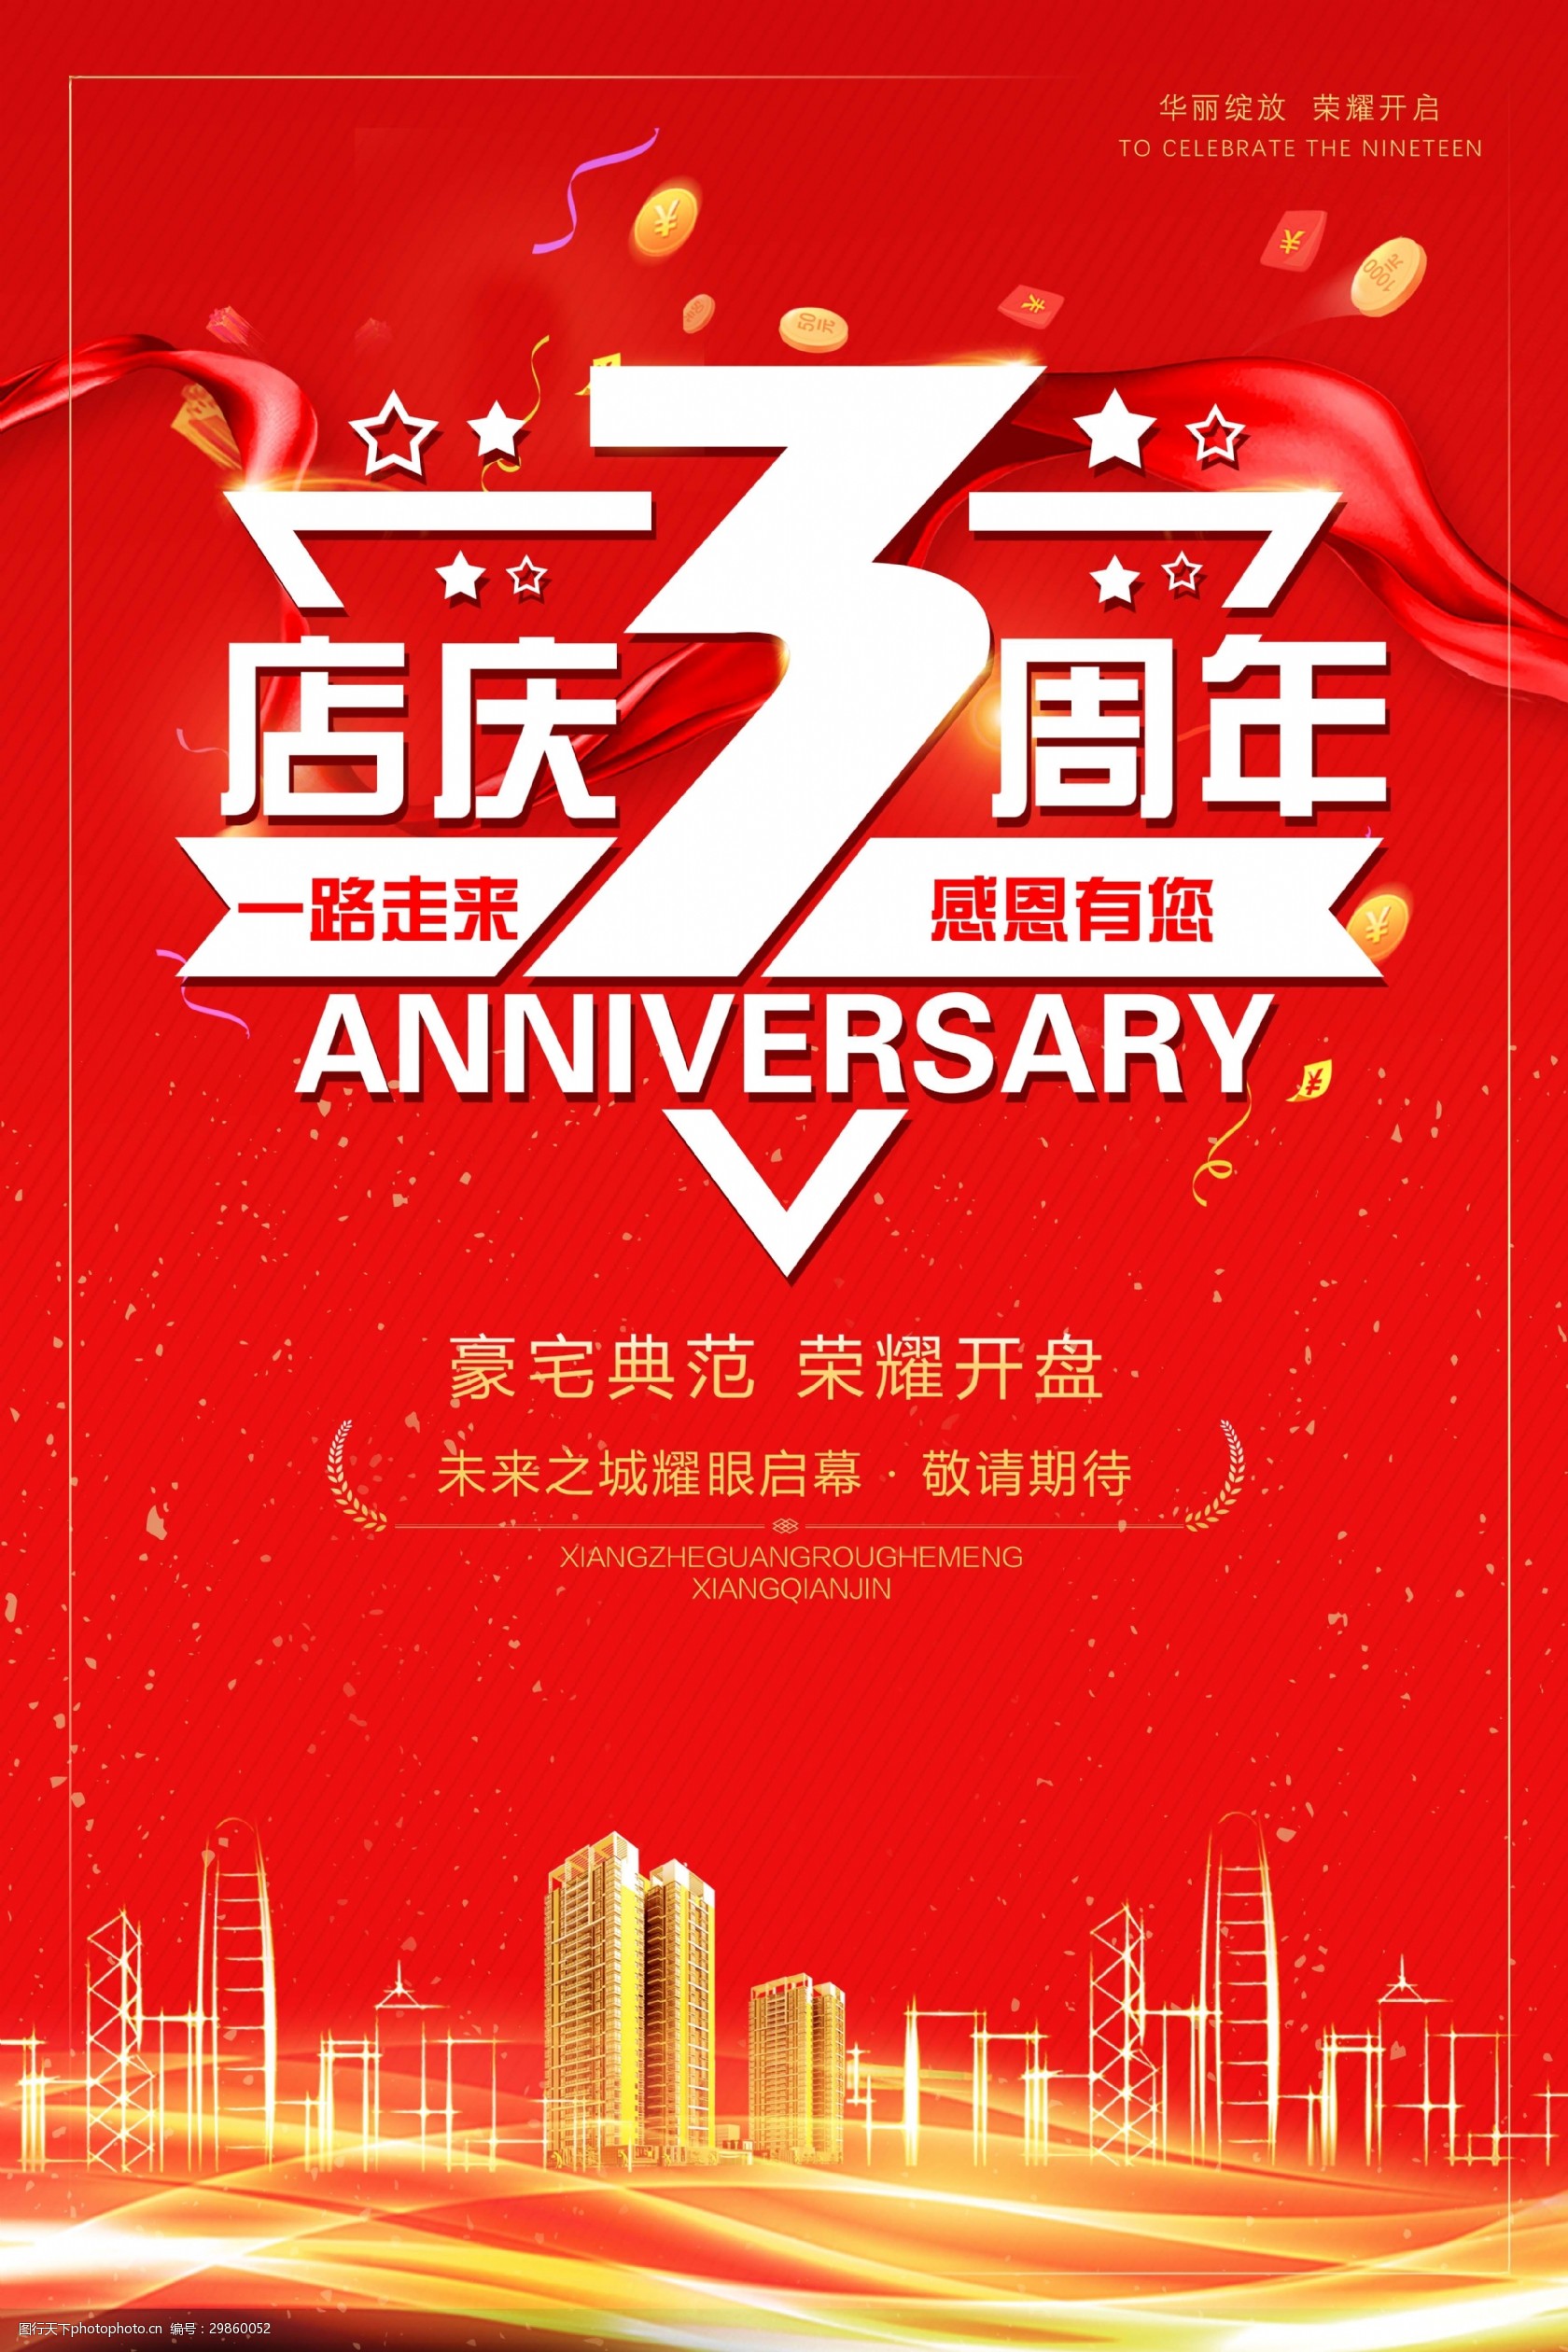 关键词:创意店庆三周年海报 时尚 创意 店庆 周年庆 3周年 艺术字